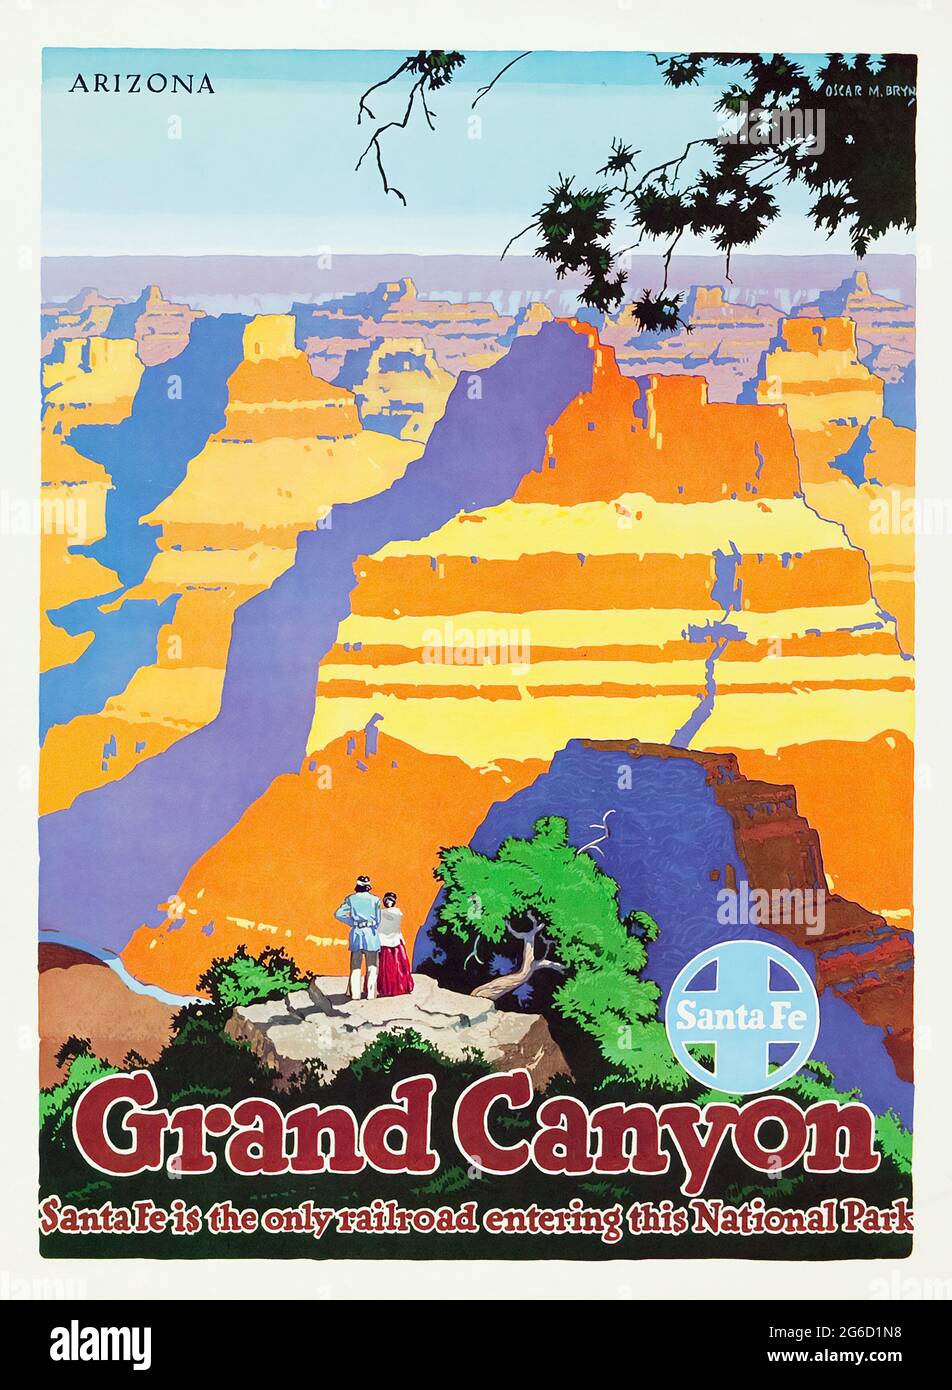 Grand Canyon, Arizona : affiche du chemin de fer de Santa Fe. C 1949. Artiste: Oscar M. Bryn Banque D'Images